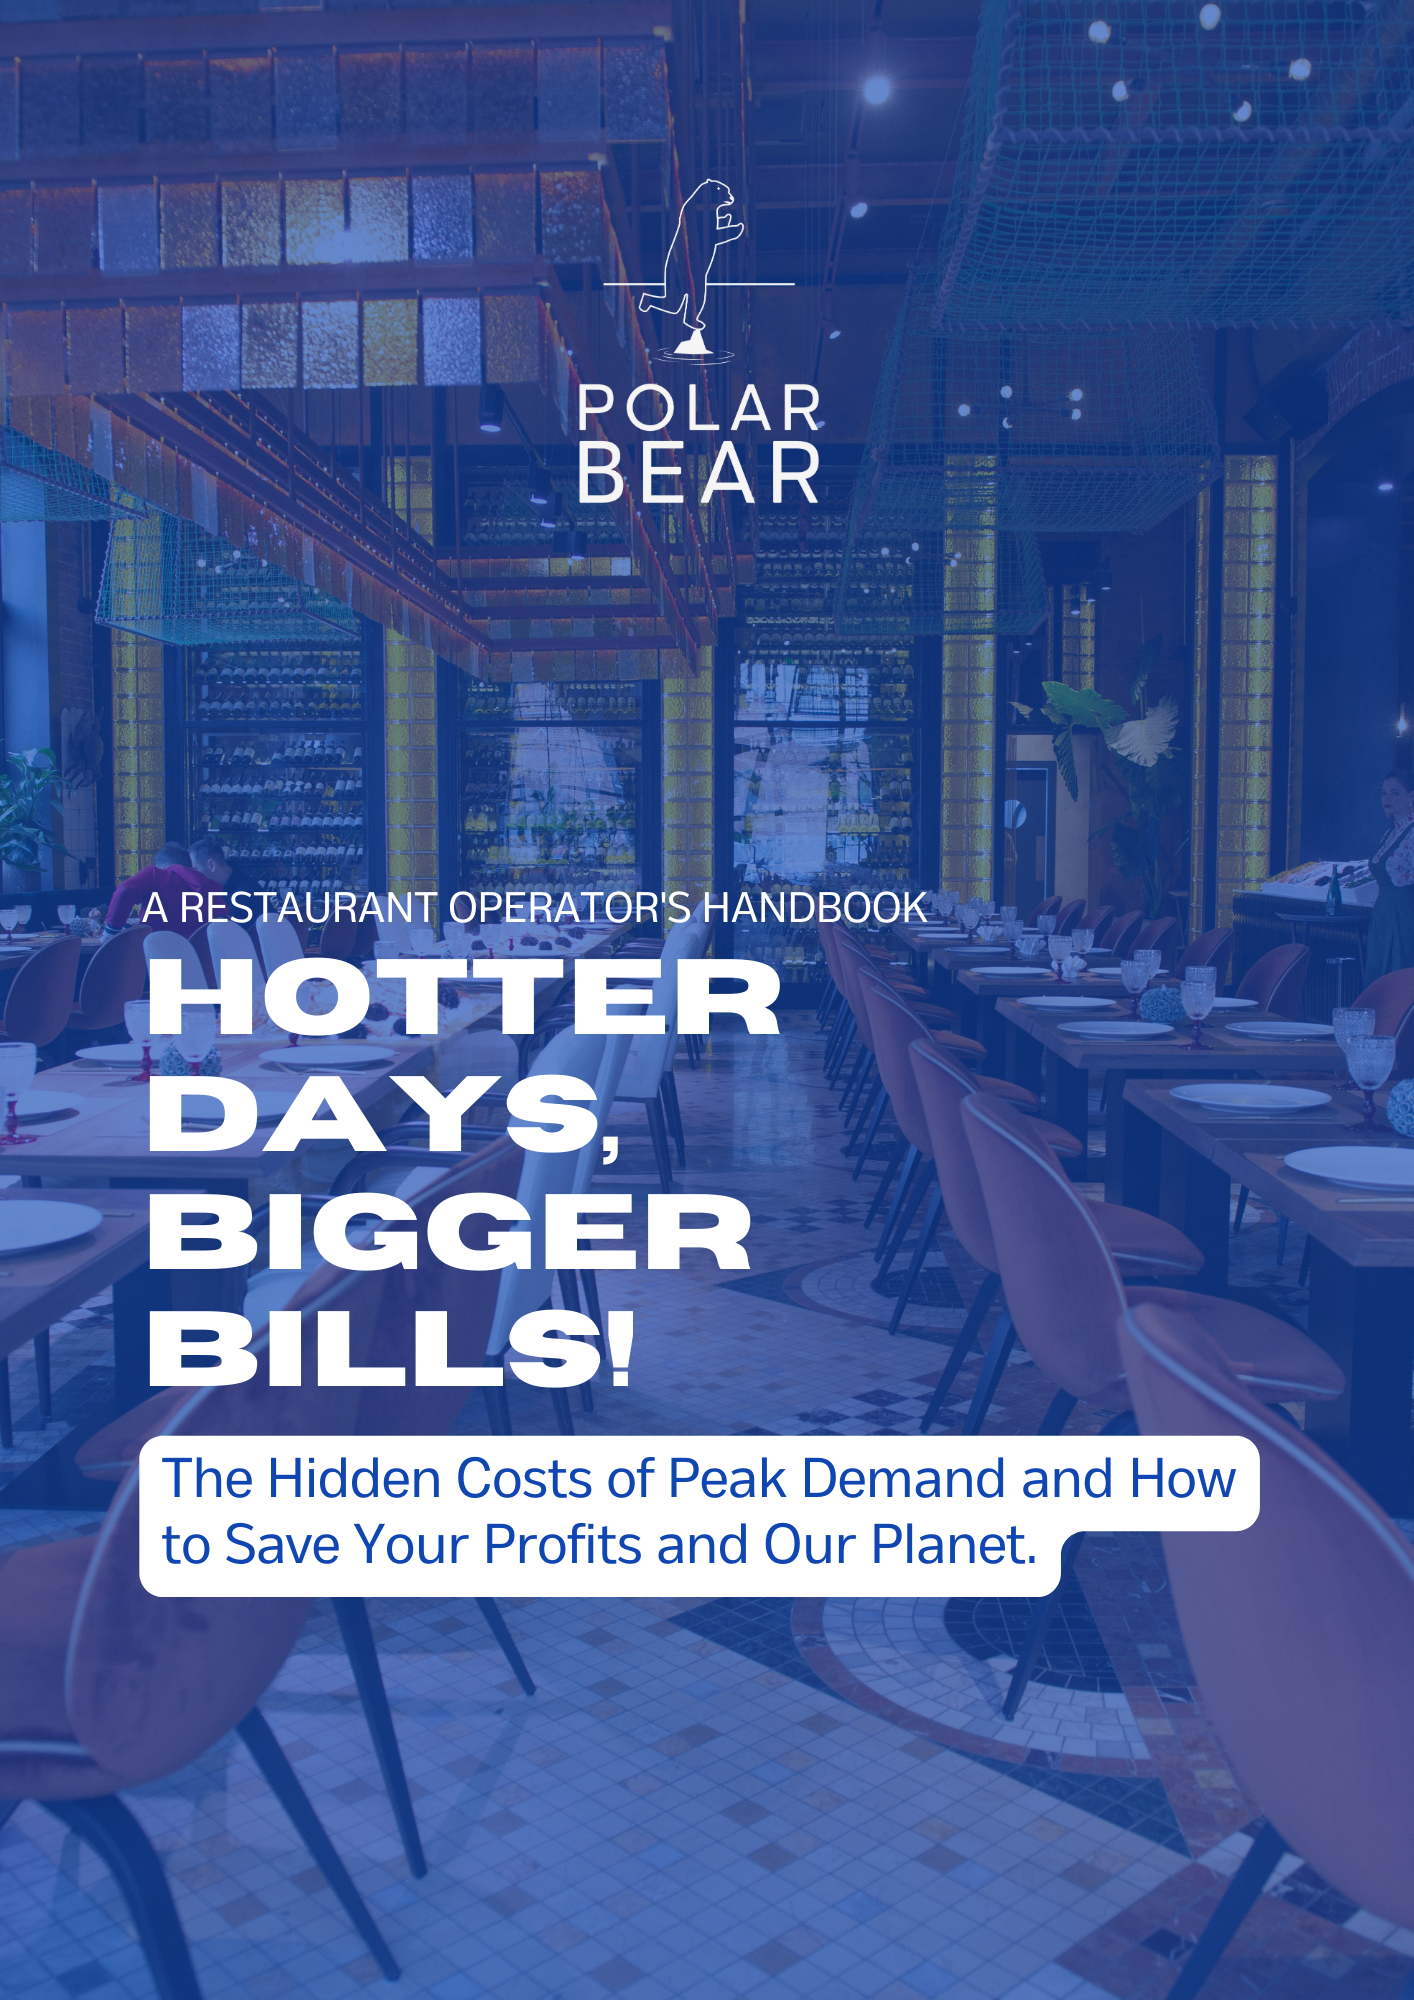 Restaurants_Copy of Hotter Days, Bigger Bills_Polar Bear_03132023_V 2.0